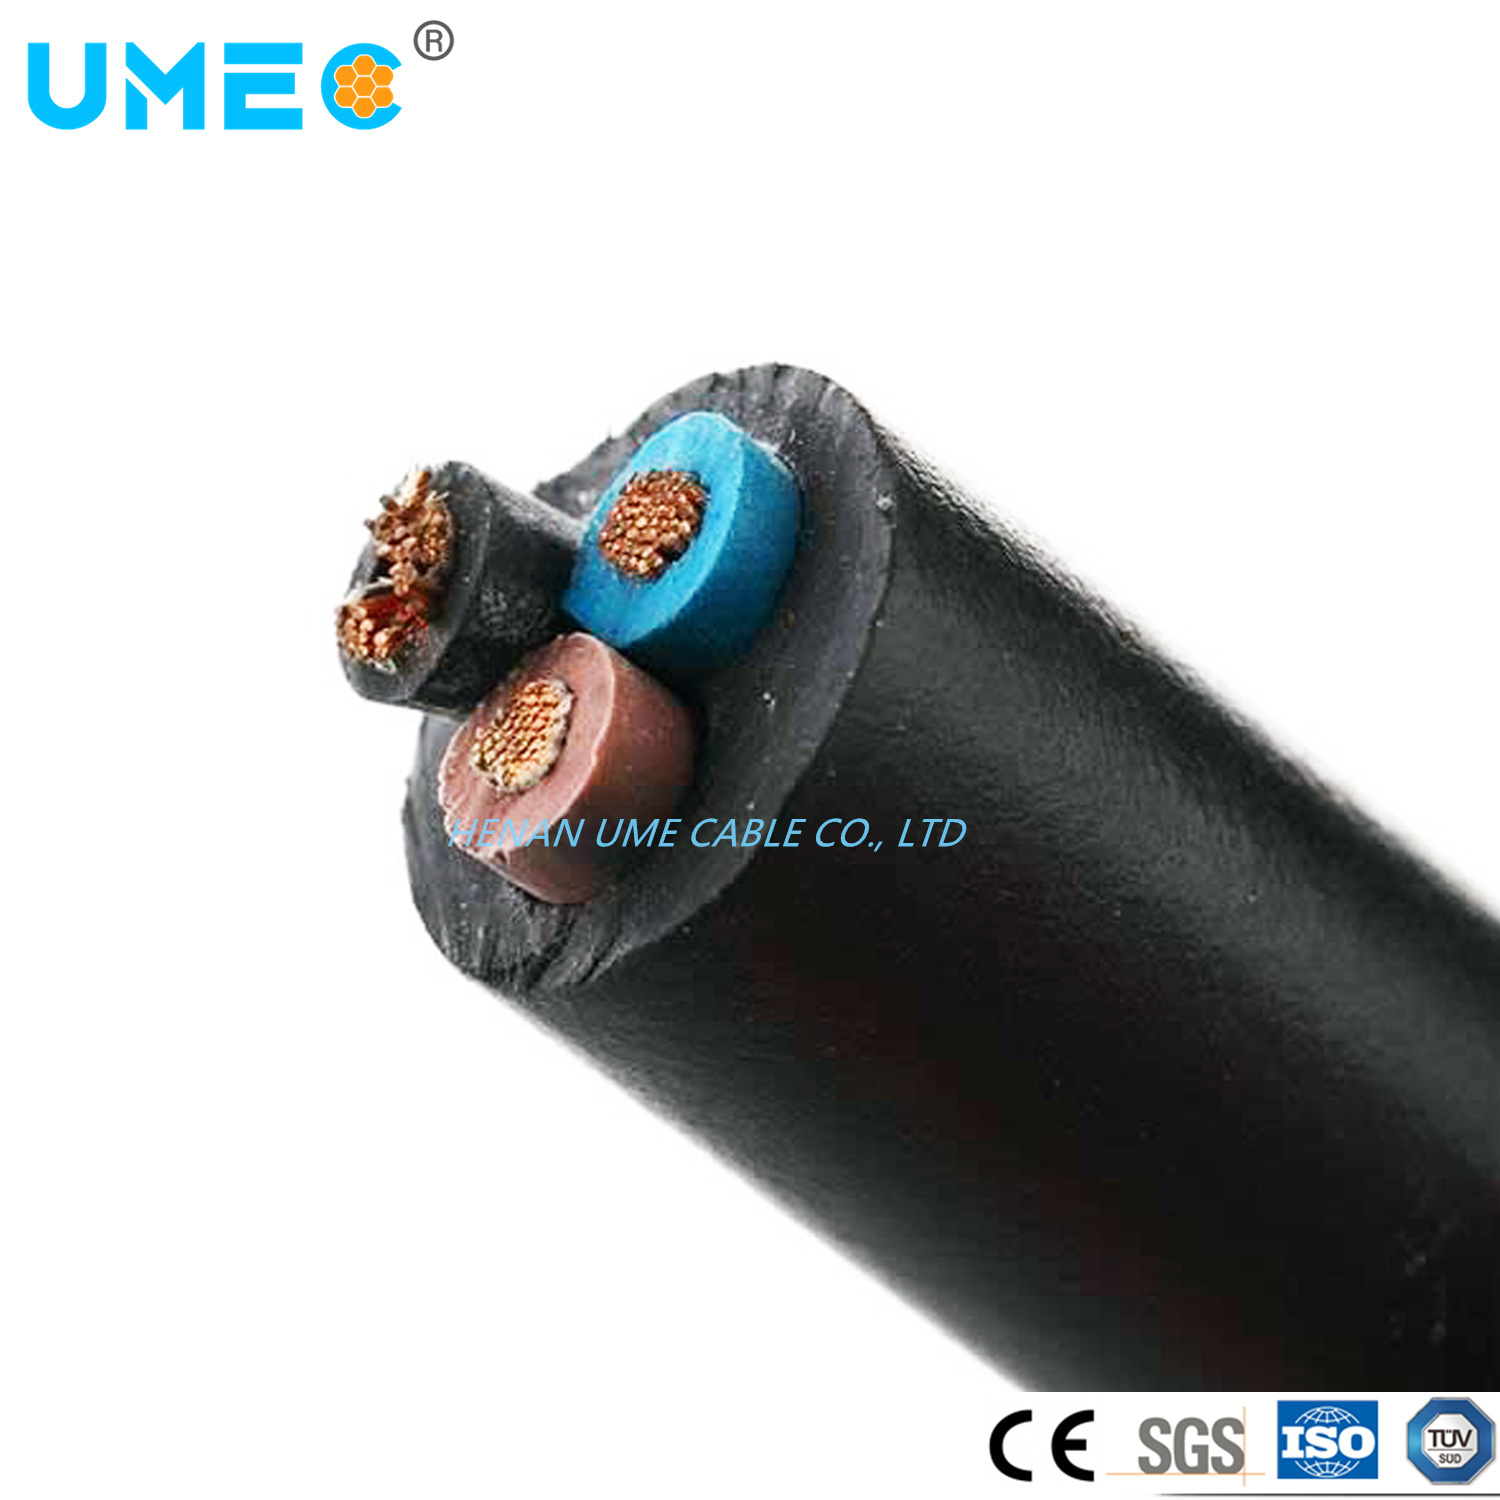 
                Универсальный общий резиновой изоляцией гибкий кабель провод 300/500V 450/750V 3core 4 core H07rnf провод кабеля
            